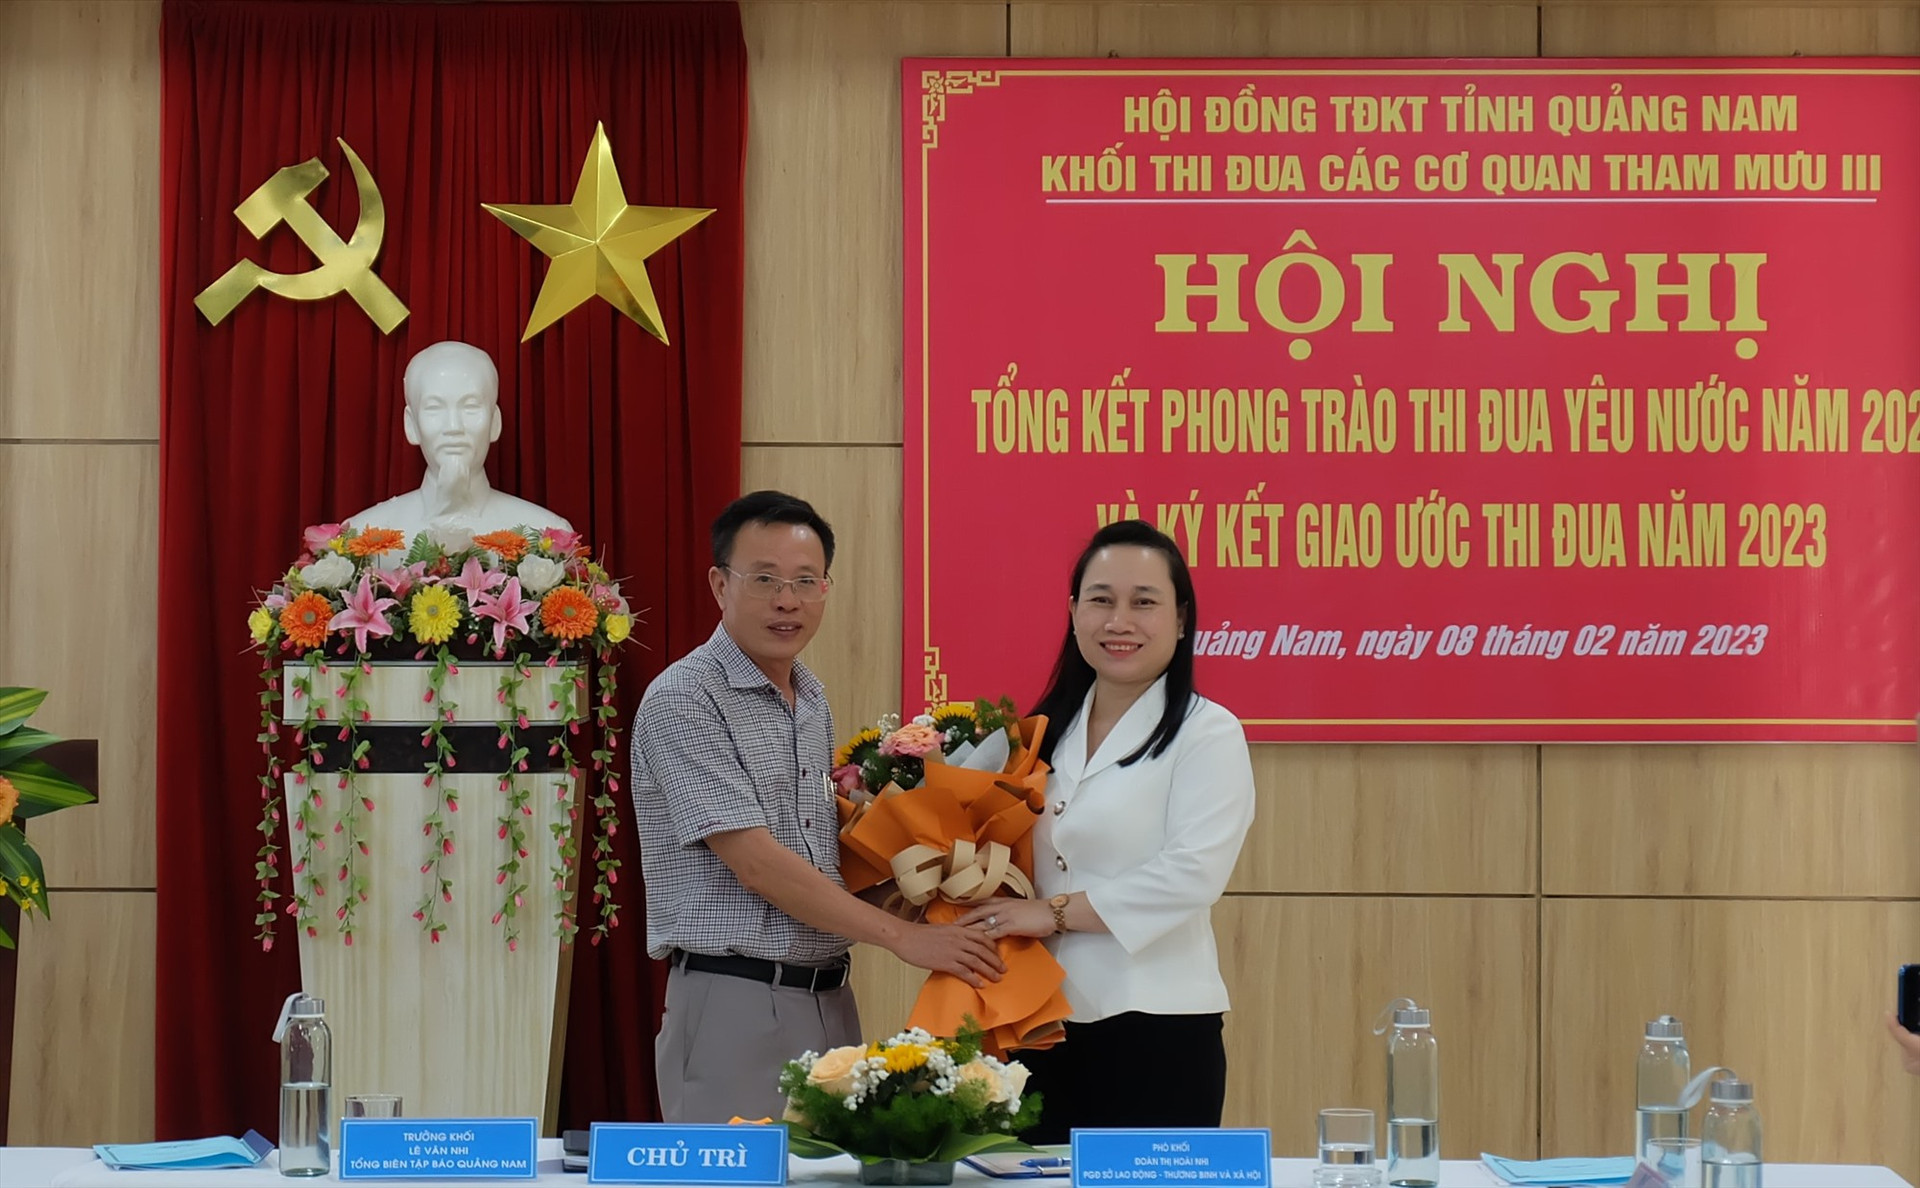 Đồng chí Lê Văn Nhi - Tổng Biên tập Báo Quảng Nam (Trưởng khối thi đua năm 2022)   tặng hoa chúc mừng cho bà Đoàn Thị Hoài Nhi - Phó Giám đốc Sở LĐ-TB&XH (Trưởng khối thi đua năm 2023). Ảnh: M.L